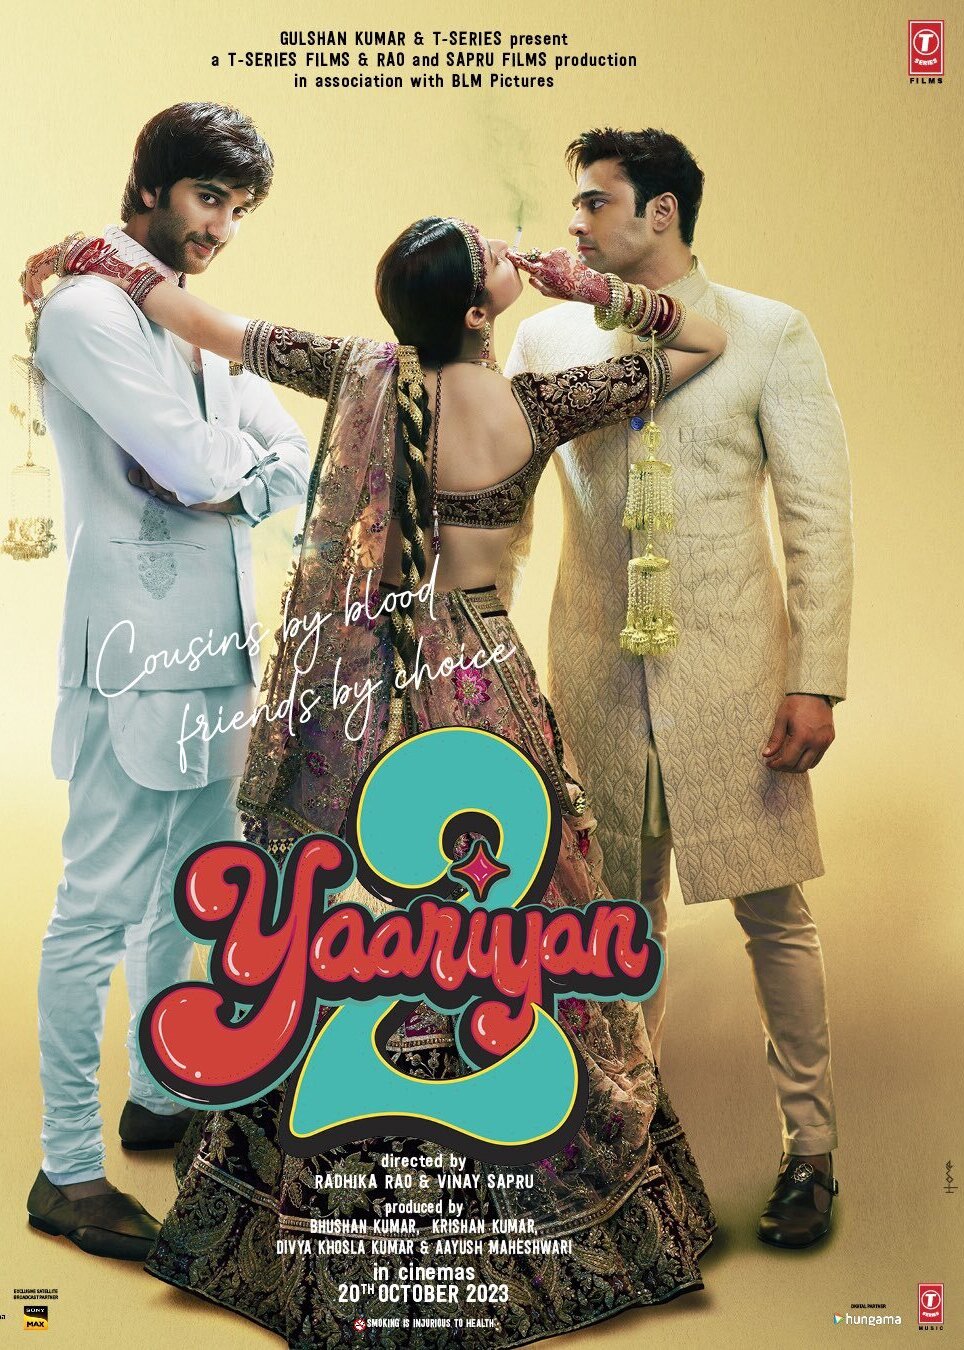 Yaariyan on Moviebuff.com